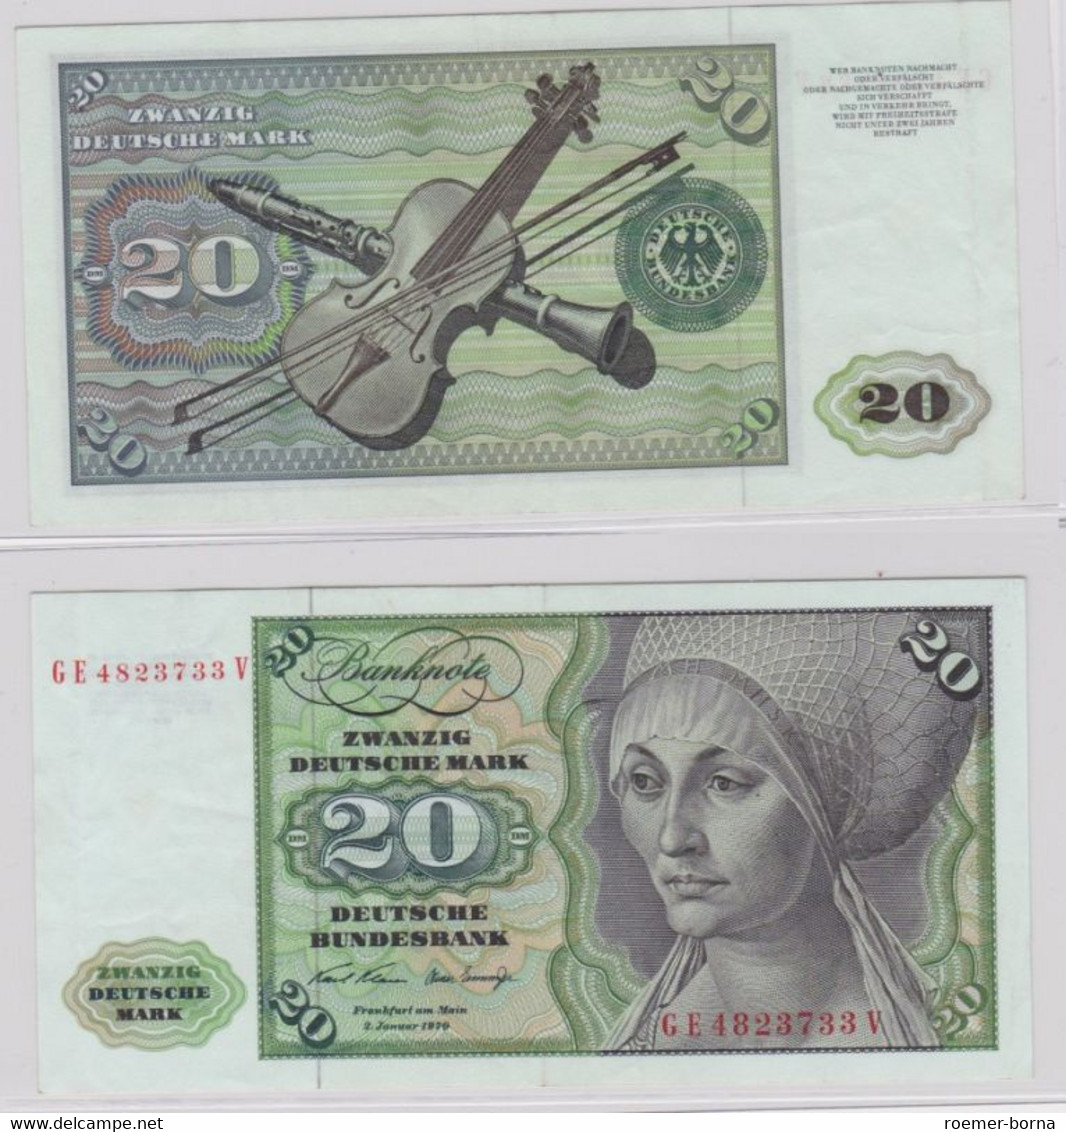 T145698 Banknote 20 DM Deutsche Mark Ro. 271b Schein 2.Jan. 1970 KN GE 4823733 V - 20 DM